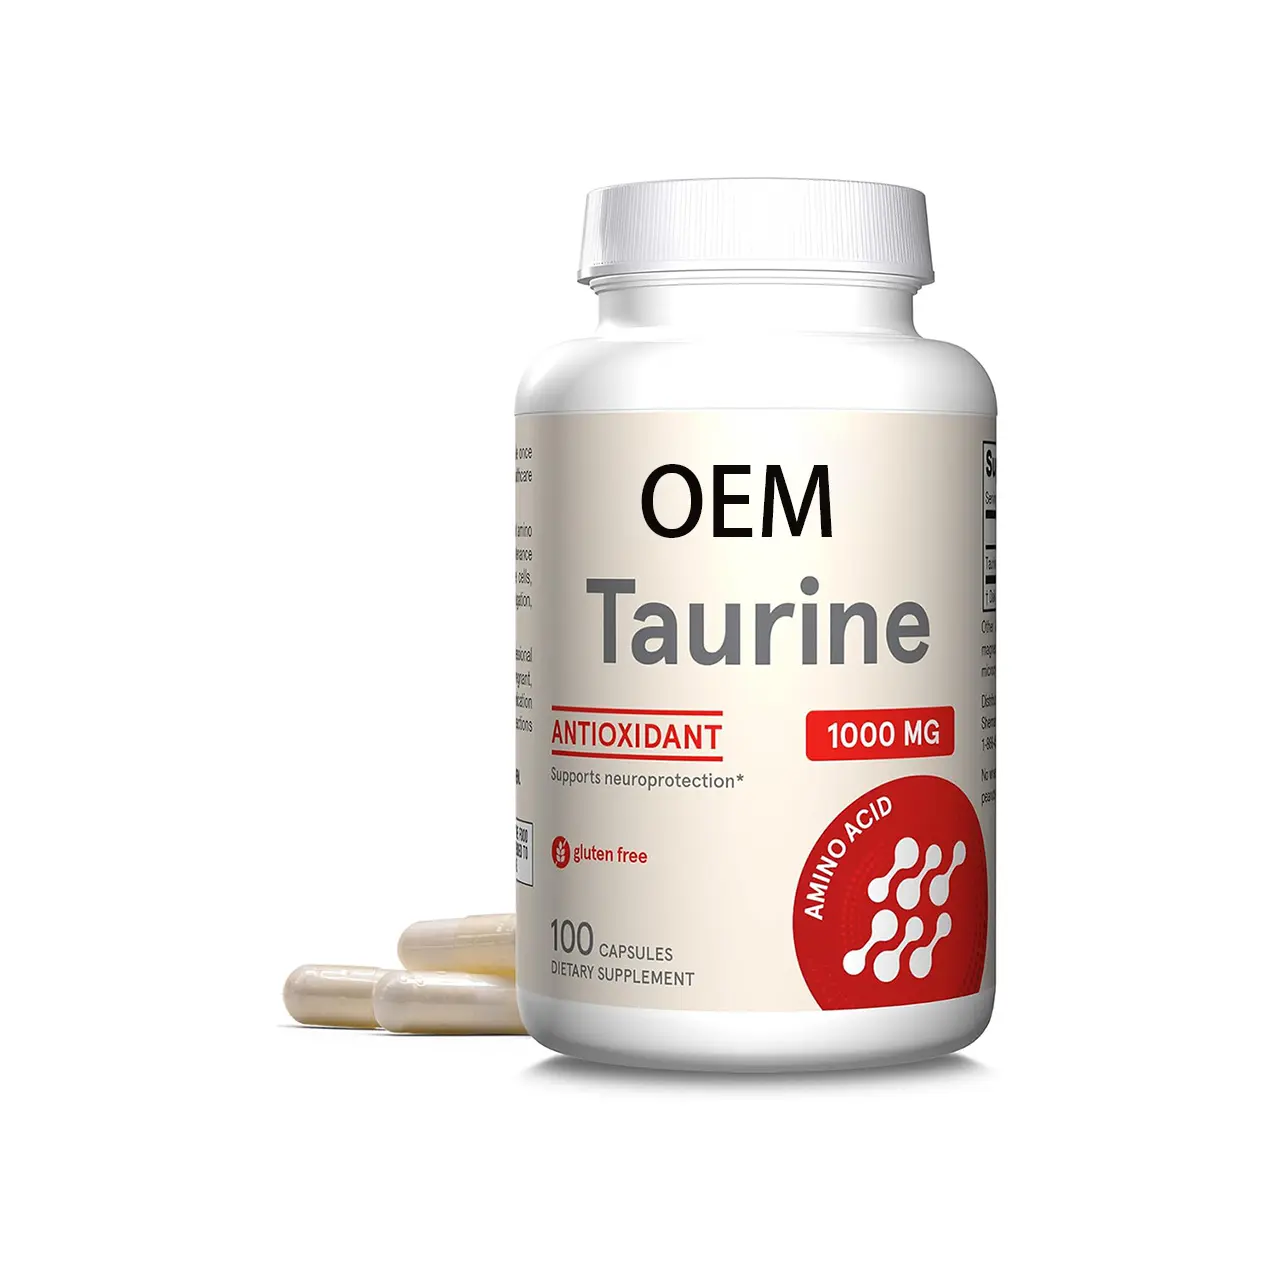 תוסף טאורין OEM בדרגה פרמצבטית כמוסות טאורין לבריאות ופקודיות המוח דיאטה